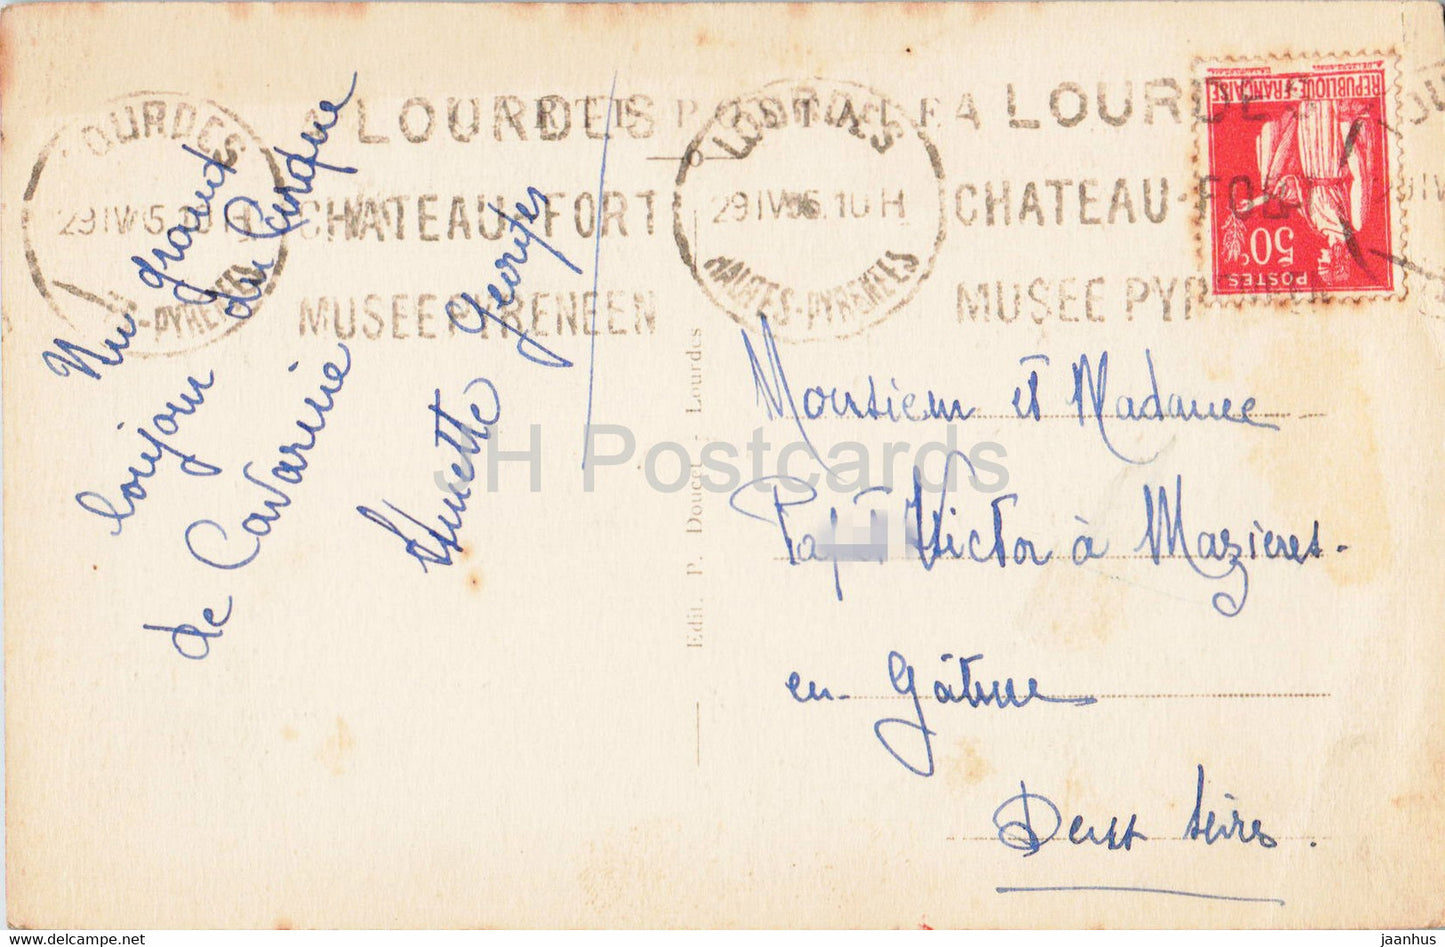 Gavarnie - Le Cirque et la Grande Cascade 422 m - 14 - carte postale ancienne - 1936 - France - occasion